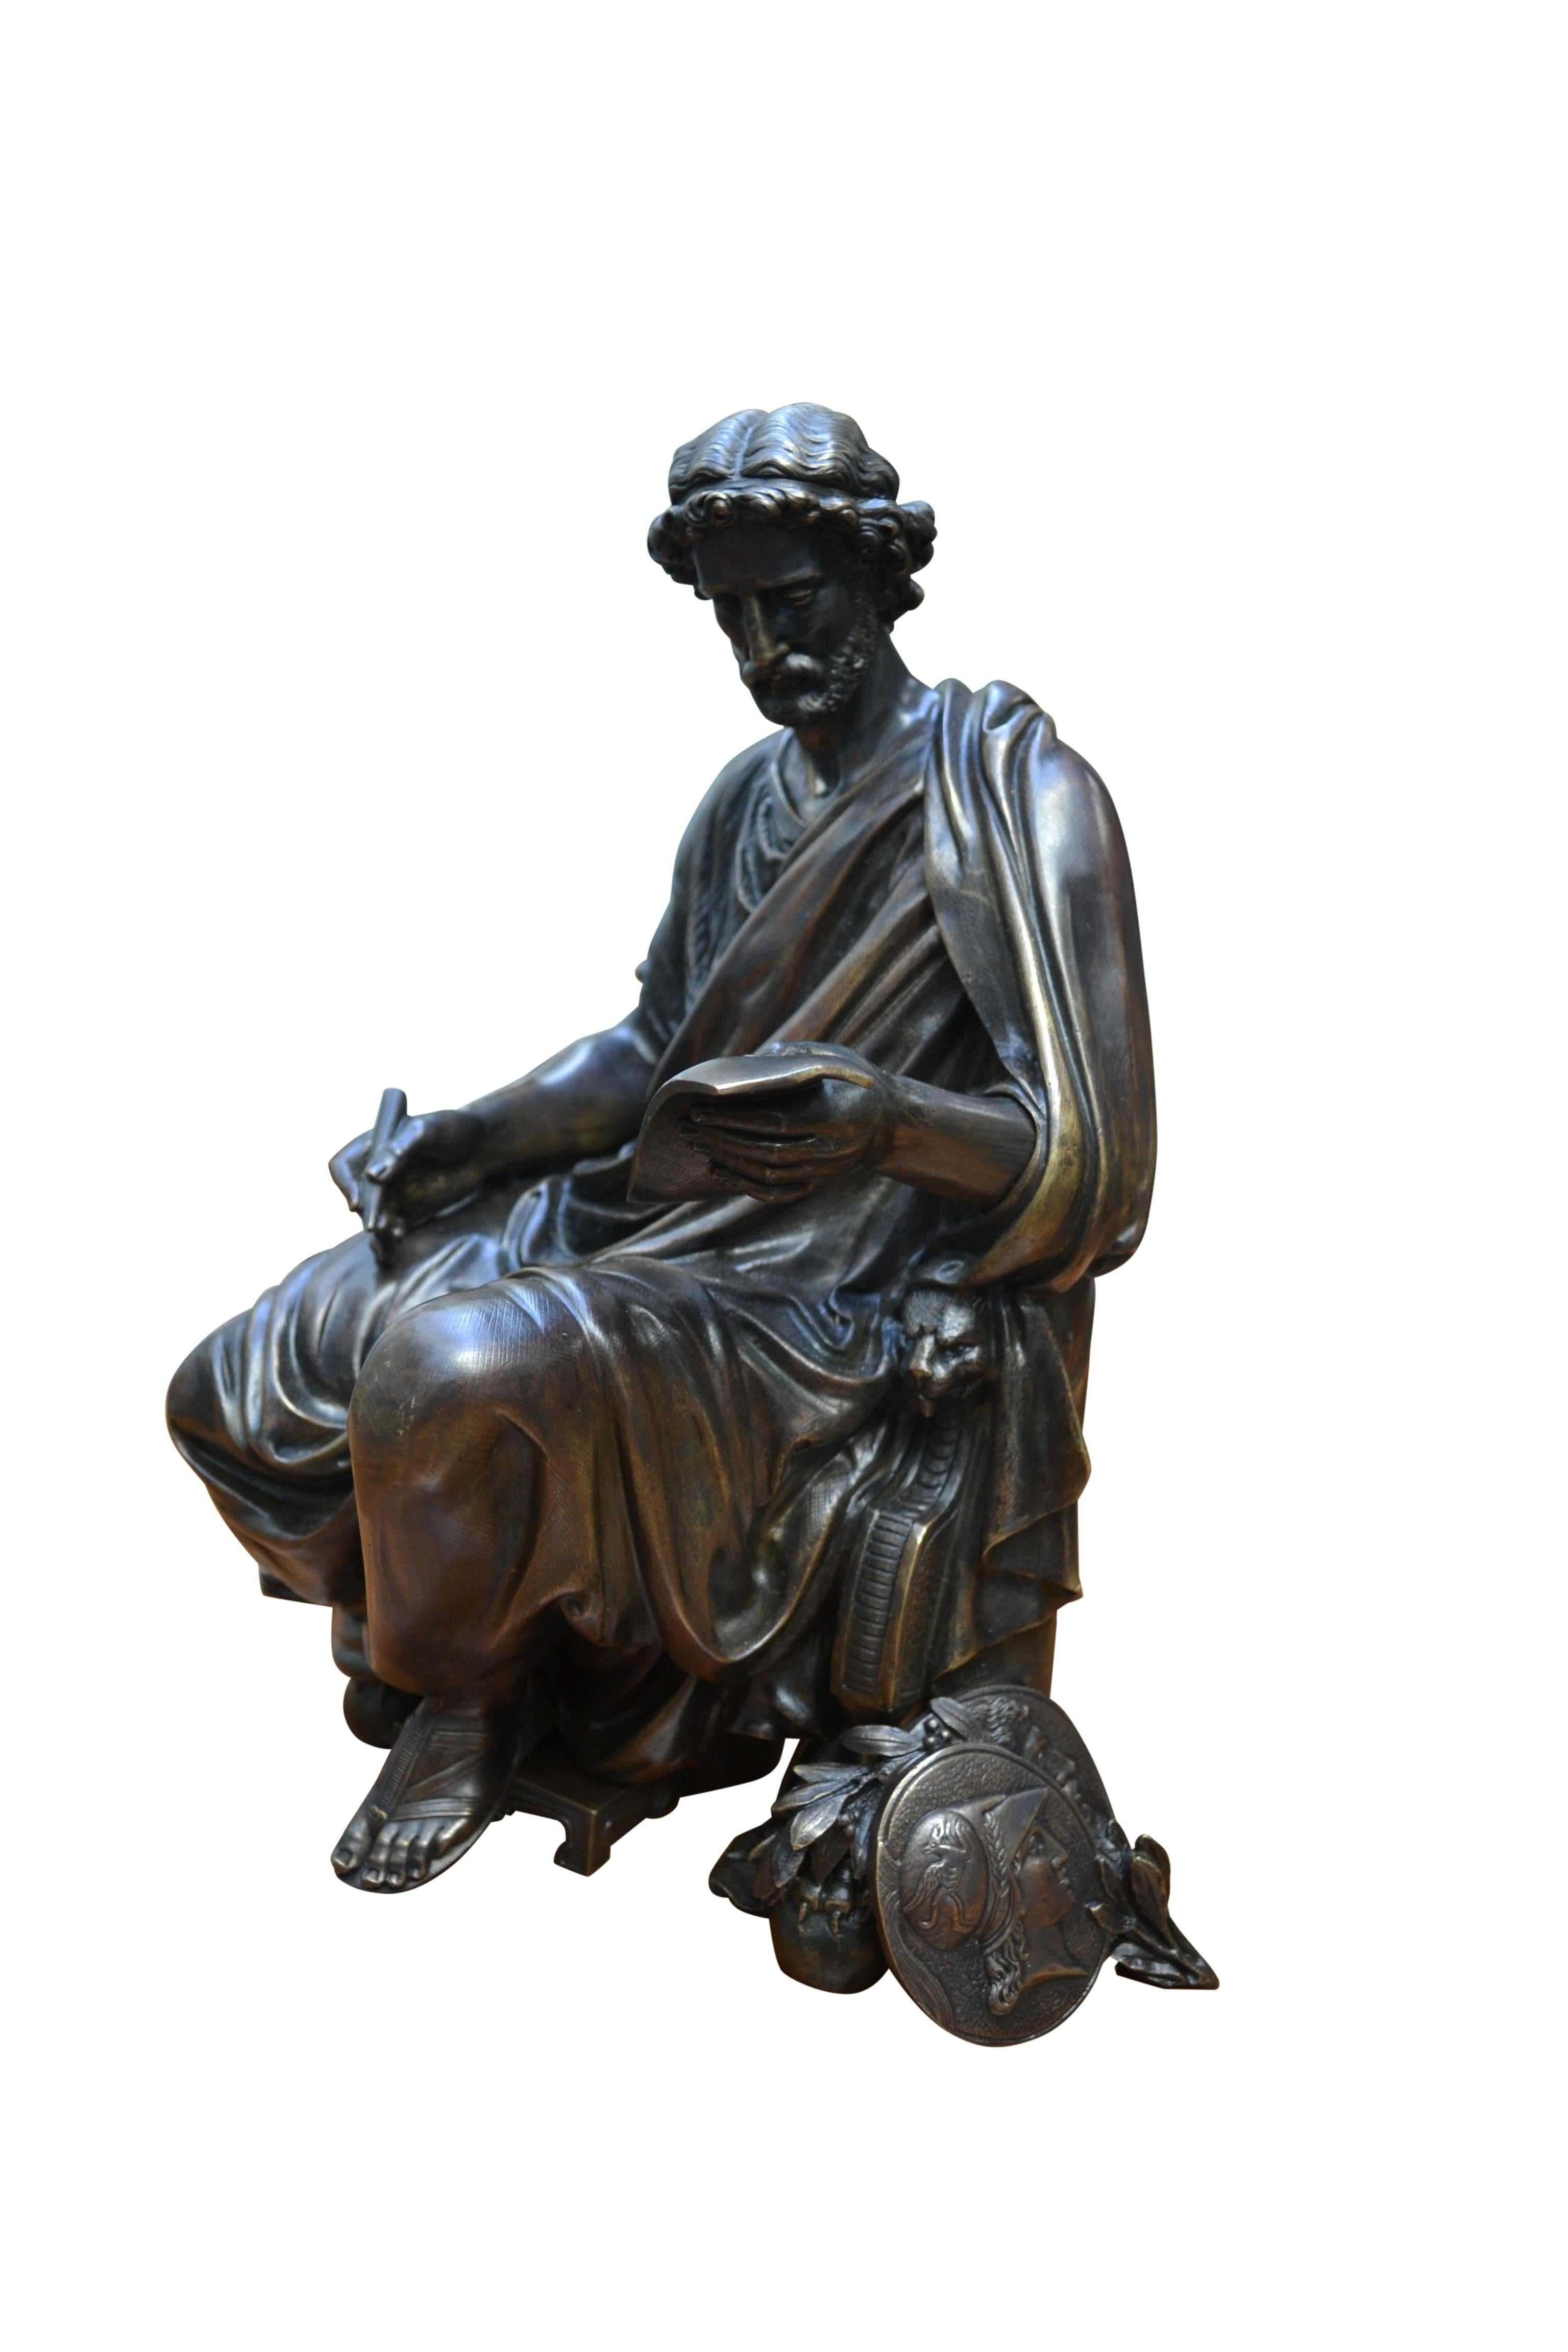 Statue en bronze moulé patiné représentant un érudit grec au drapé classique, assis de côté.  sur une chaise Klismos  avec les griffons caractéristiques comme supports de jambe avant, le sujet tenant un stylo dans sa main droite et un parchemin